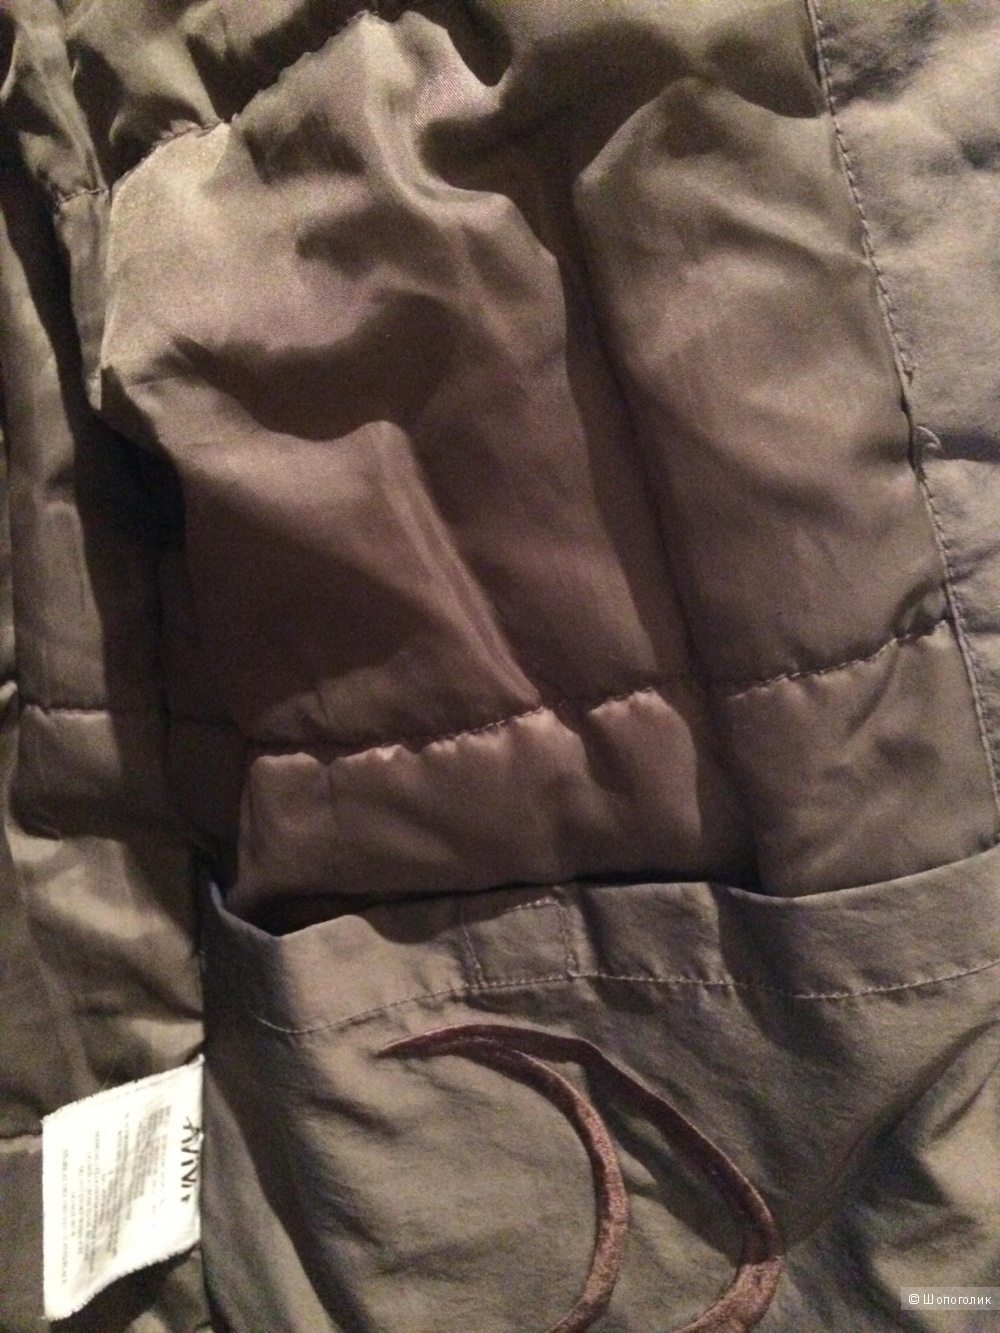 Утеплённая куртка Aviva, 46-48 размер.